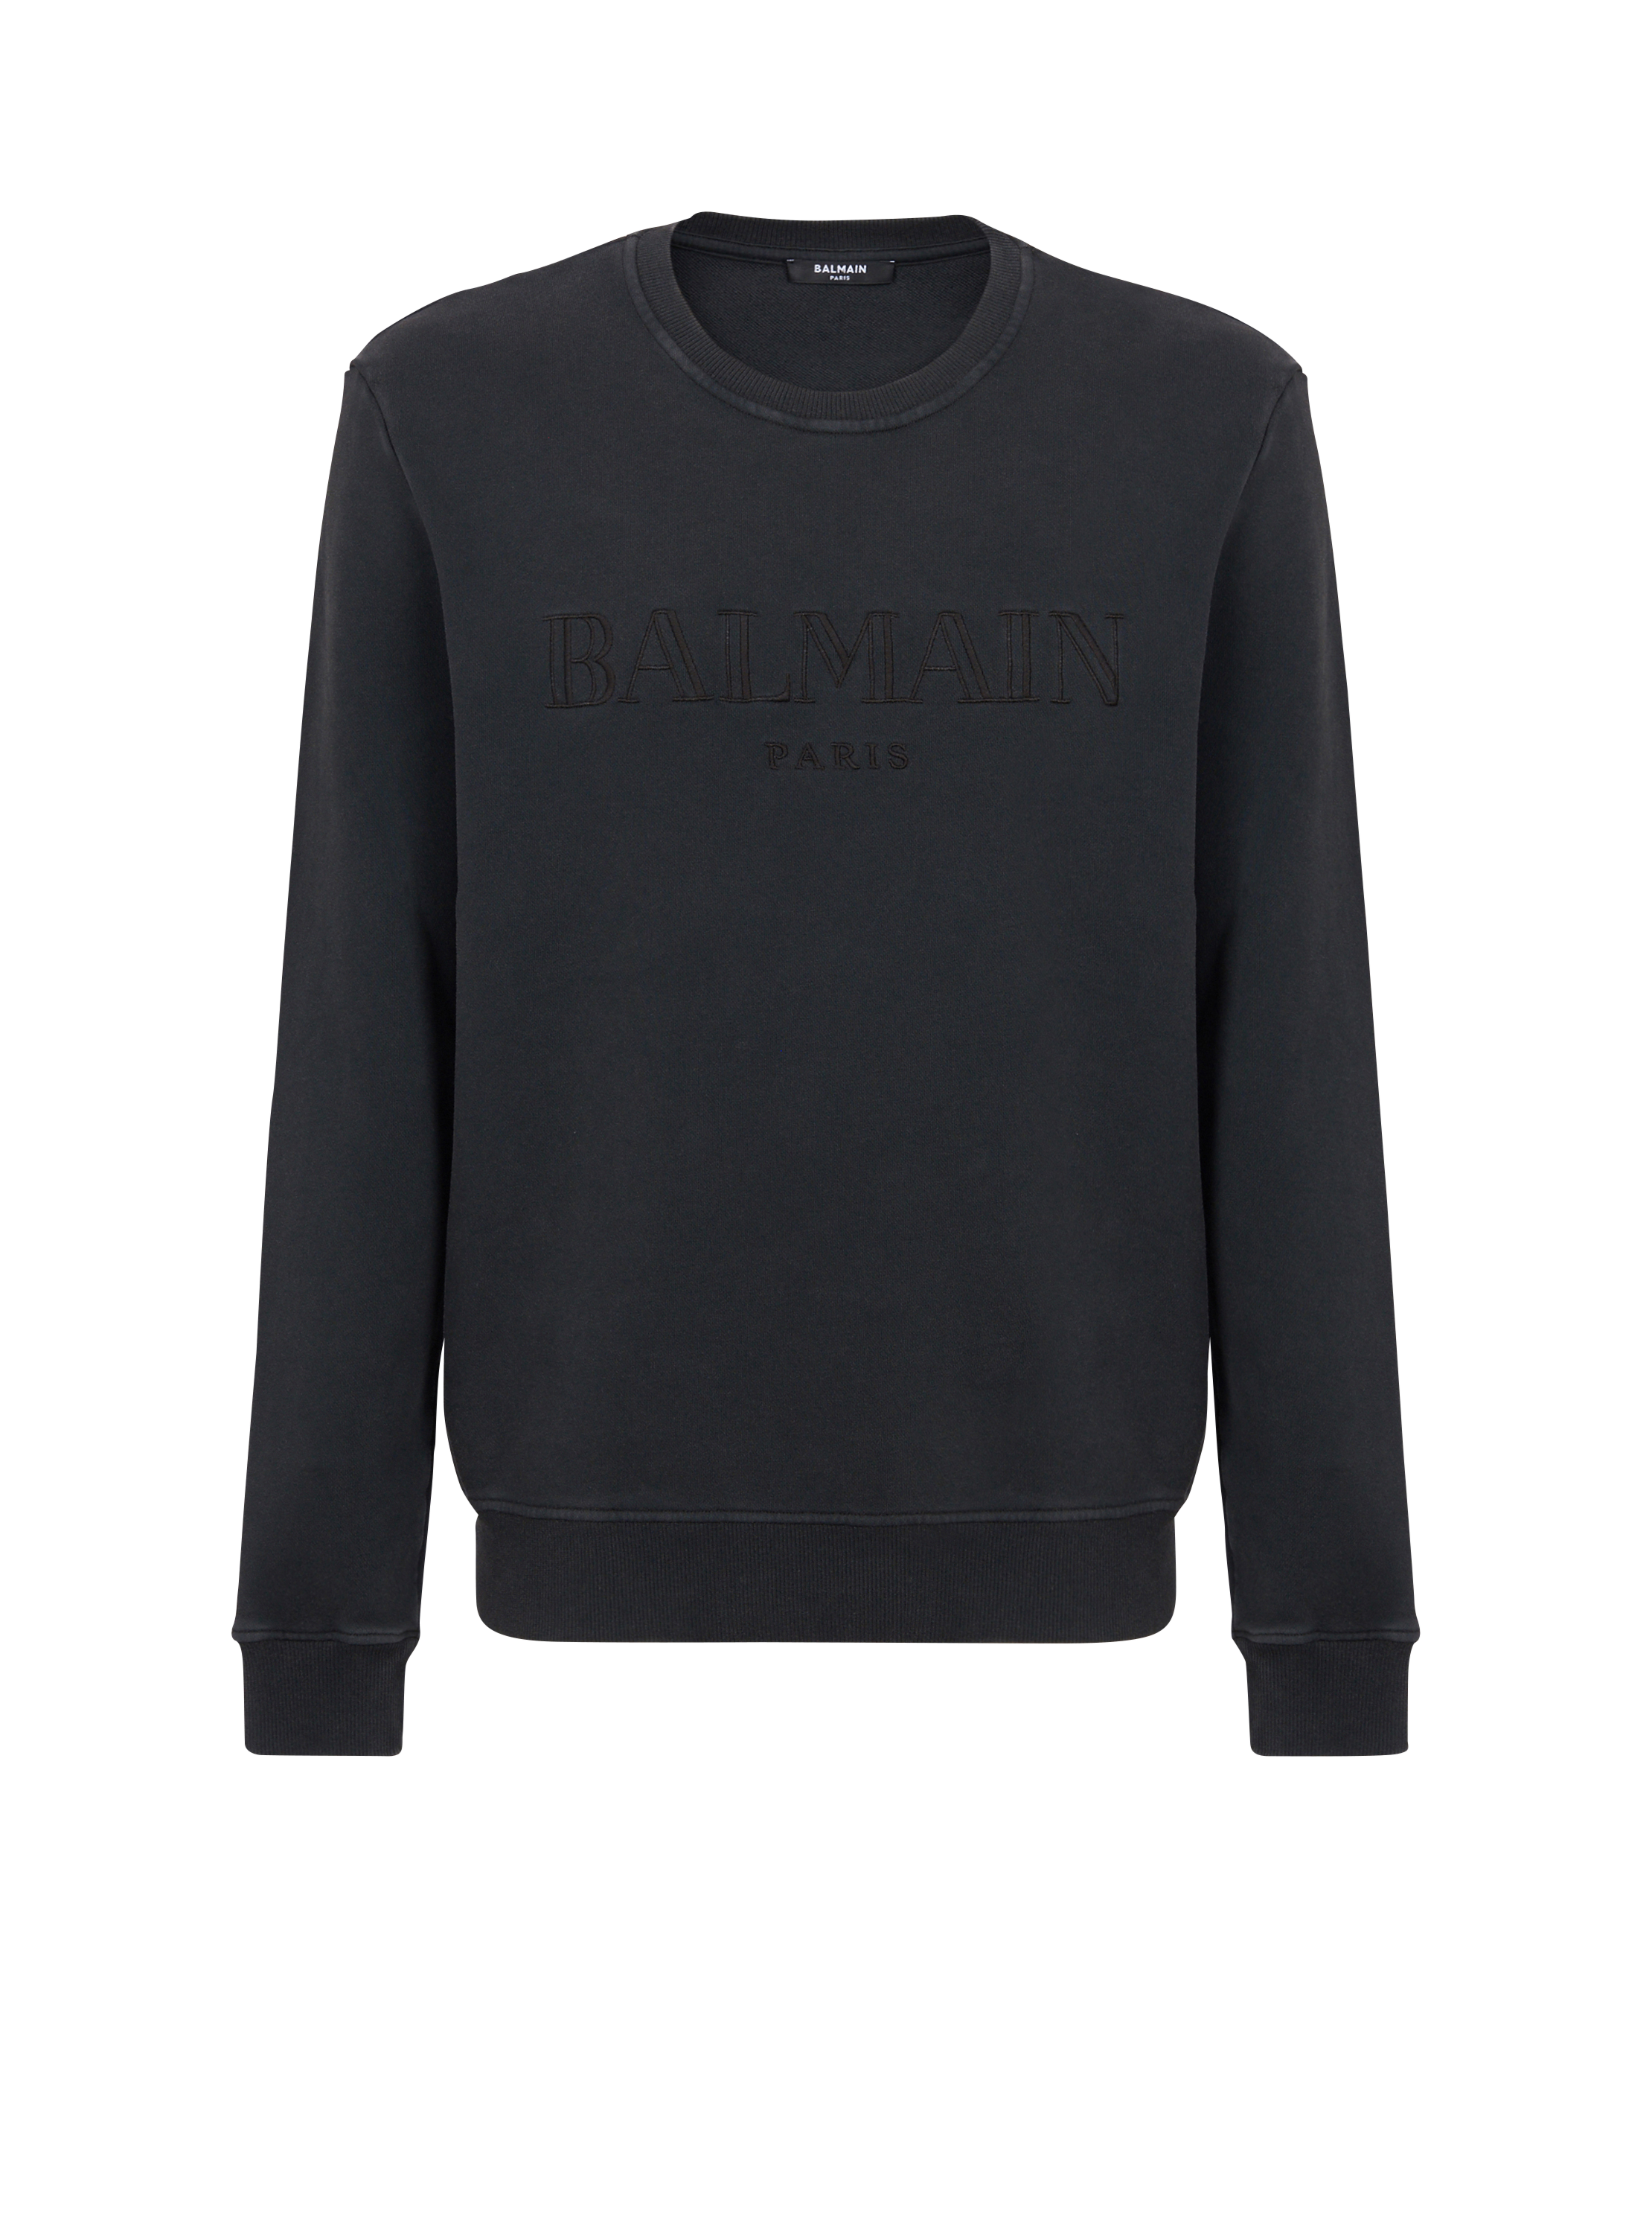 Vintage Balmain sweatshirt, grey, hi-res